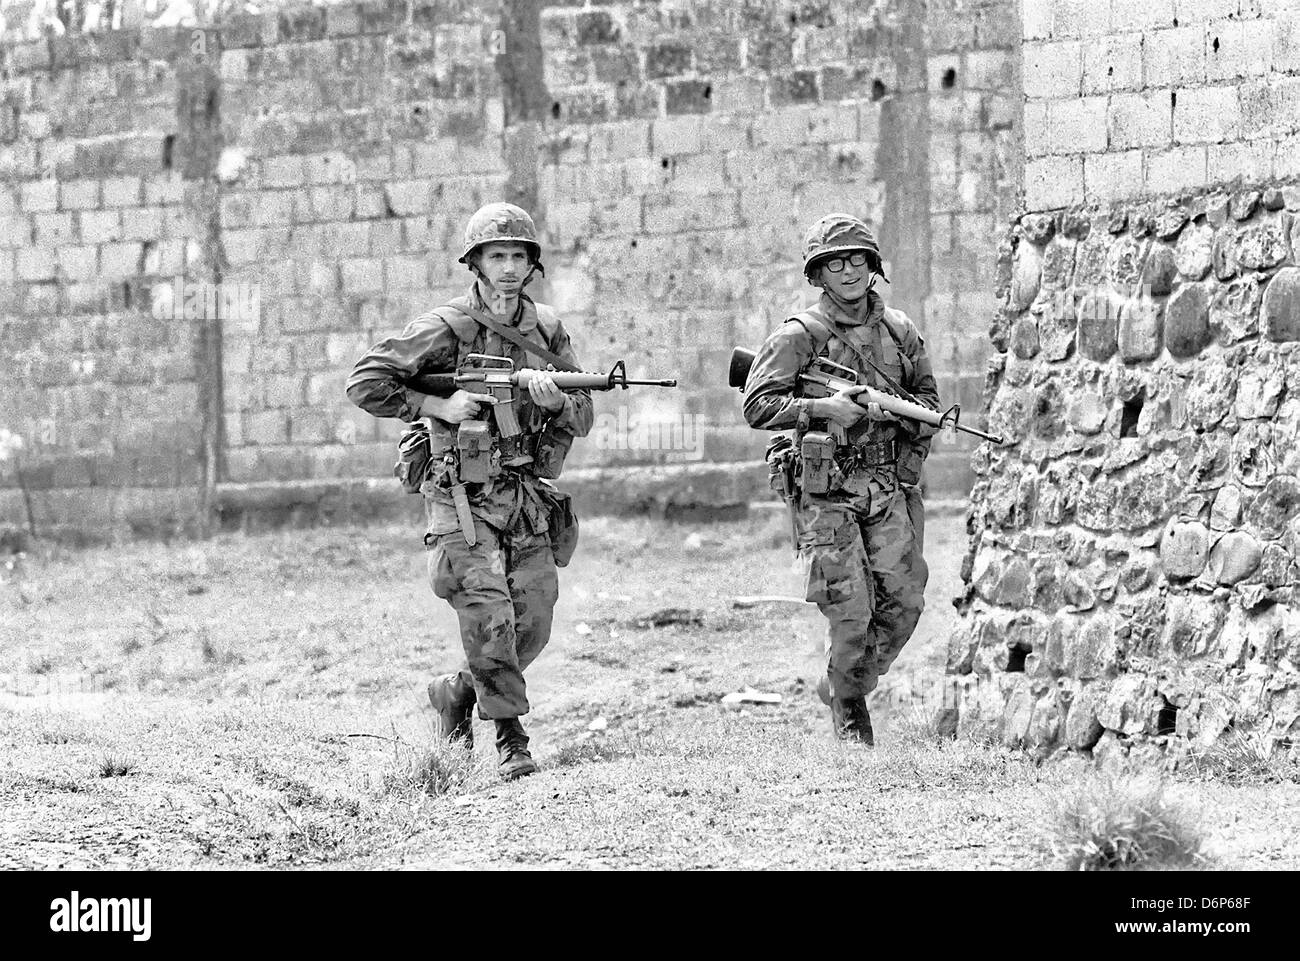 US-Marines bewaffnet mit M16A1 Gewehr Patrouillen die Gegend um Grenville während der Invasion von Grenada, unter dem Codenamen Operation Urgent Fury 25. Oktober 1983 in Grenville, Grenada. Die Invasion begann am 25. Oktober 1983 und wurde die erste größere militärische Aktion von den Vereinigten Staaten seit dem Ende des Vietnam-Krieges. Stockfoto